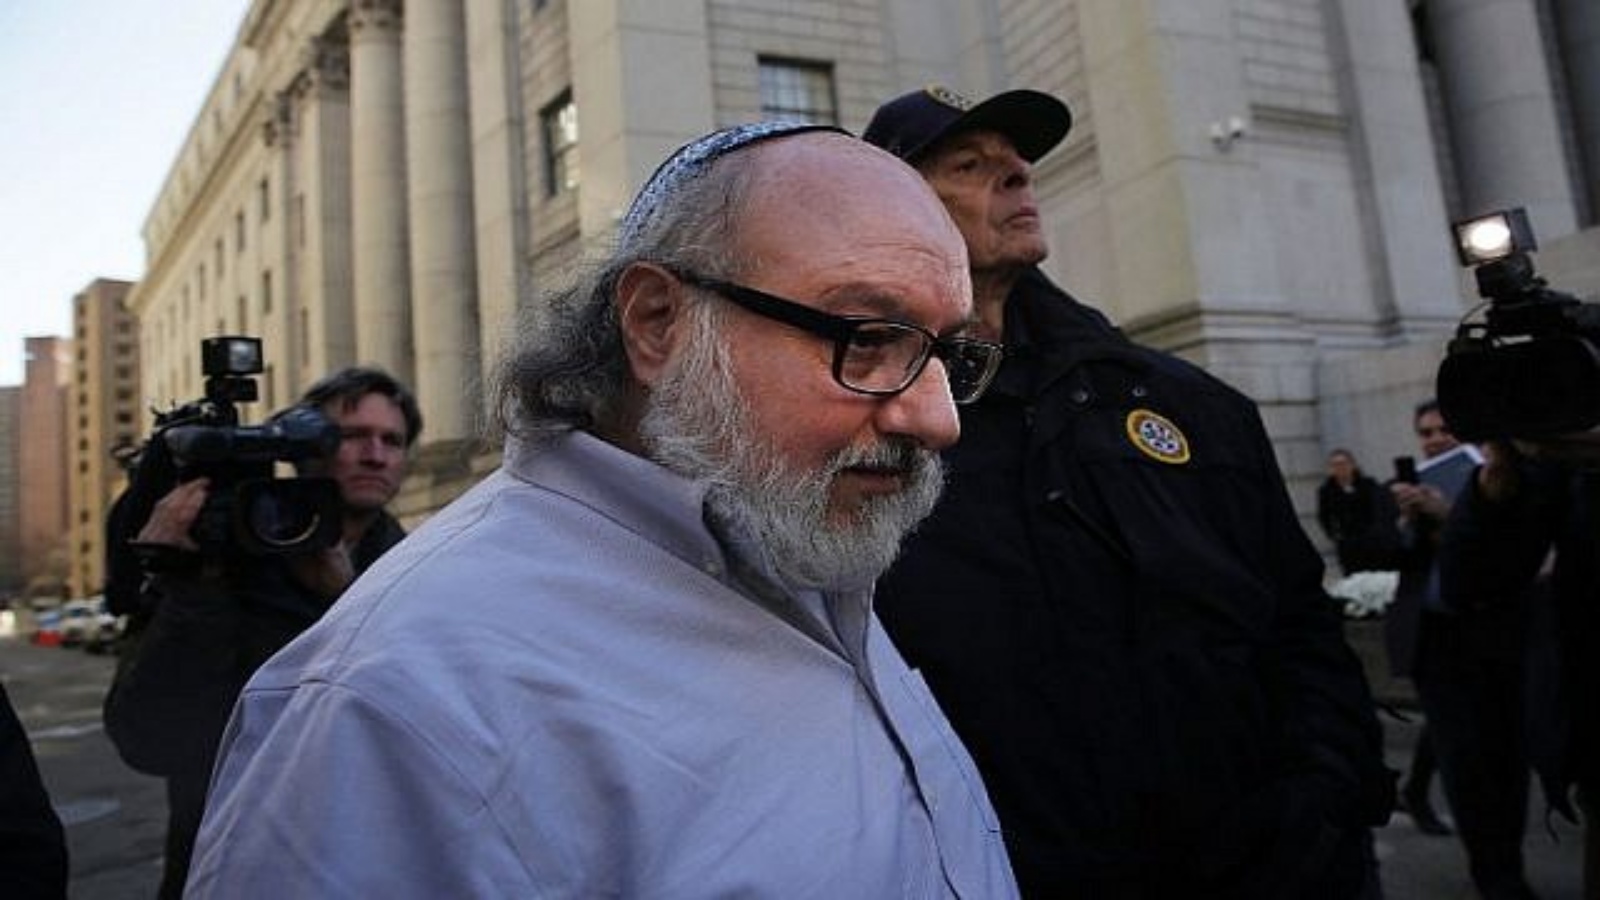 جوناثان بولارد ، الأمريكي المدان بالتجسس لصالح إسرائيل ، يغادر محكمة نيويورك بعد إطلاق سراحه من السجن بعد 30 عامًا ، في 20 نوفمبر 2015 في نيويورك.